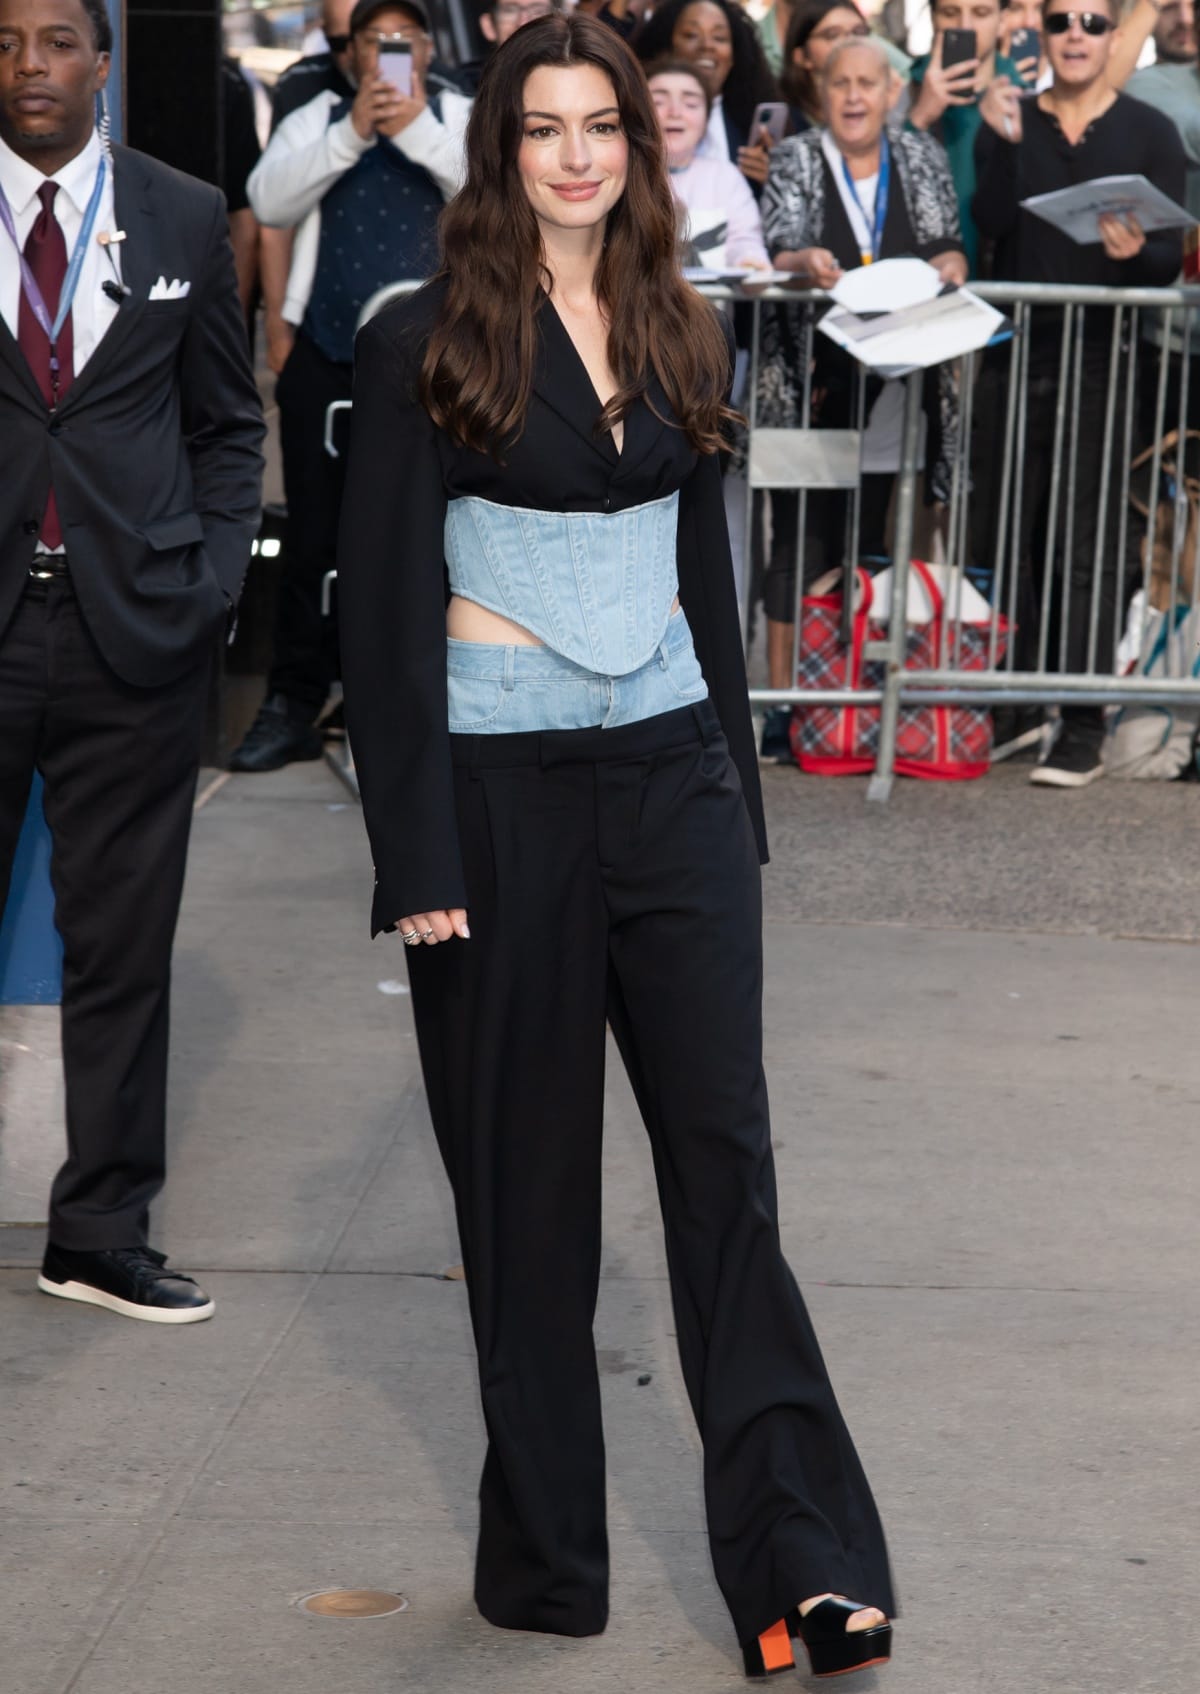 Anne Hathaway wearing black platform heels from Santoni